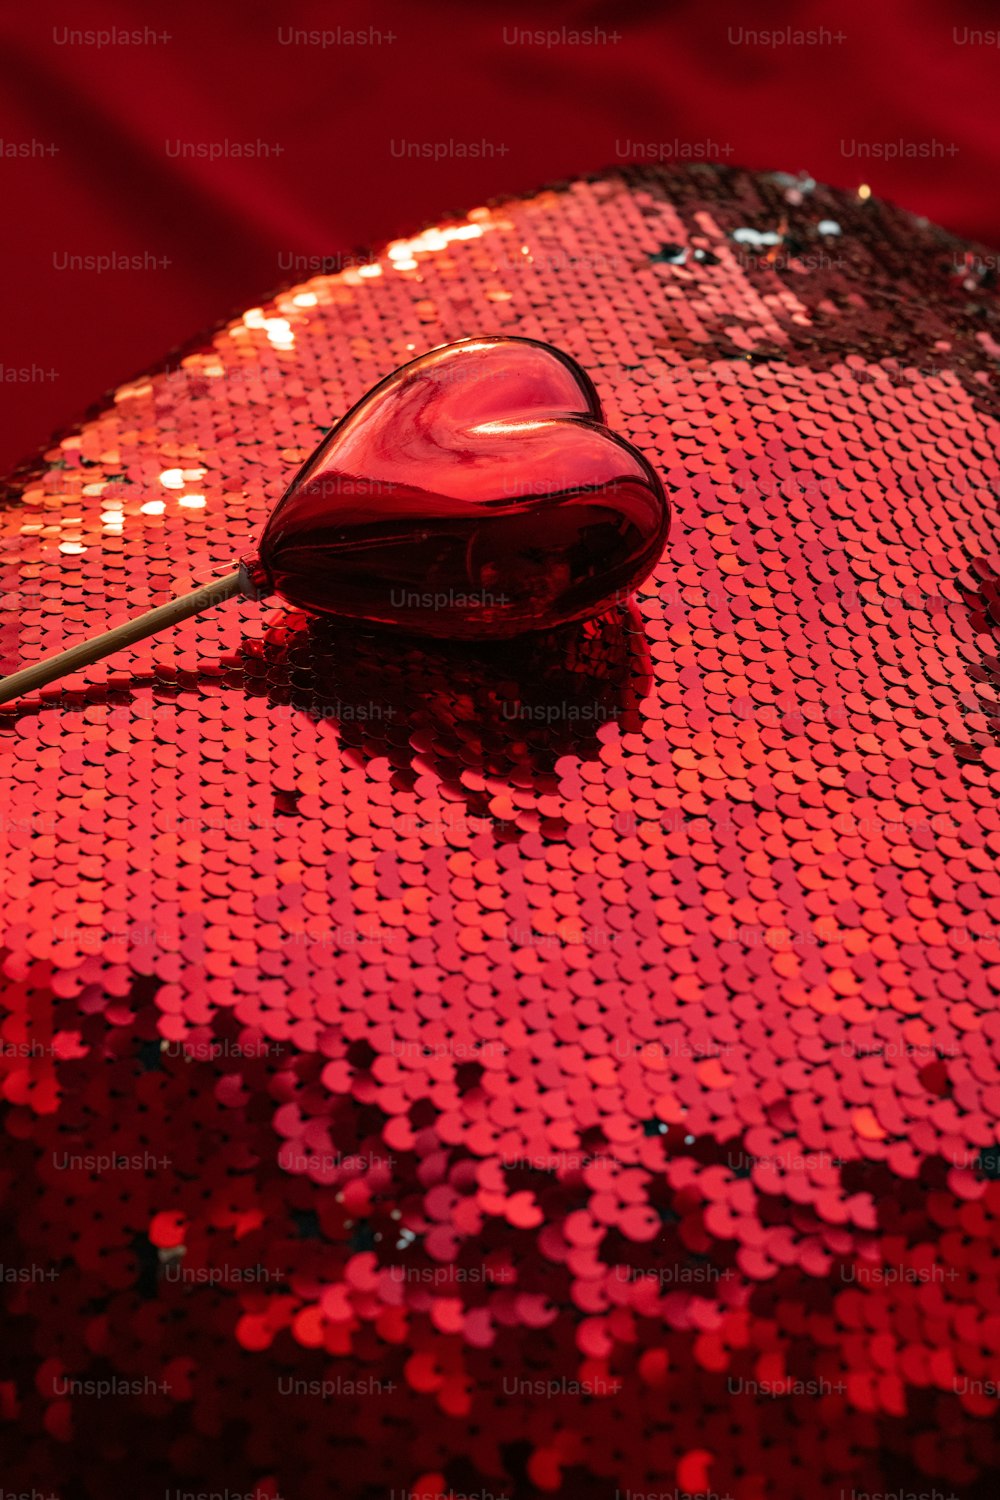 Eine Computermaus, die auf einer roten paillettenbesetzten Oberfläche sitzt